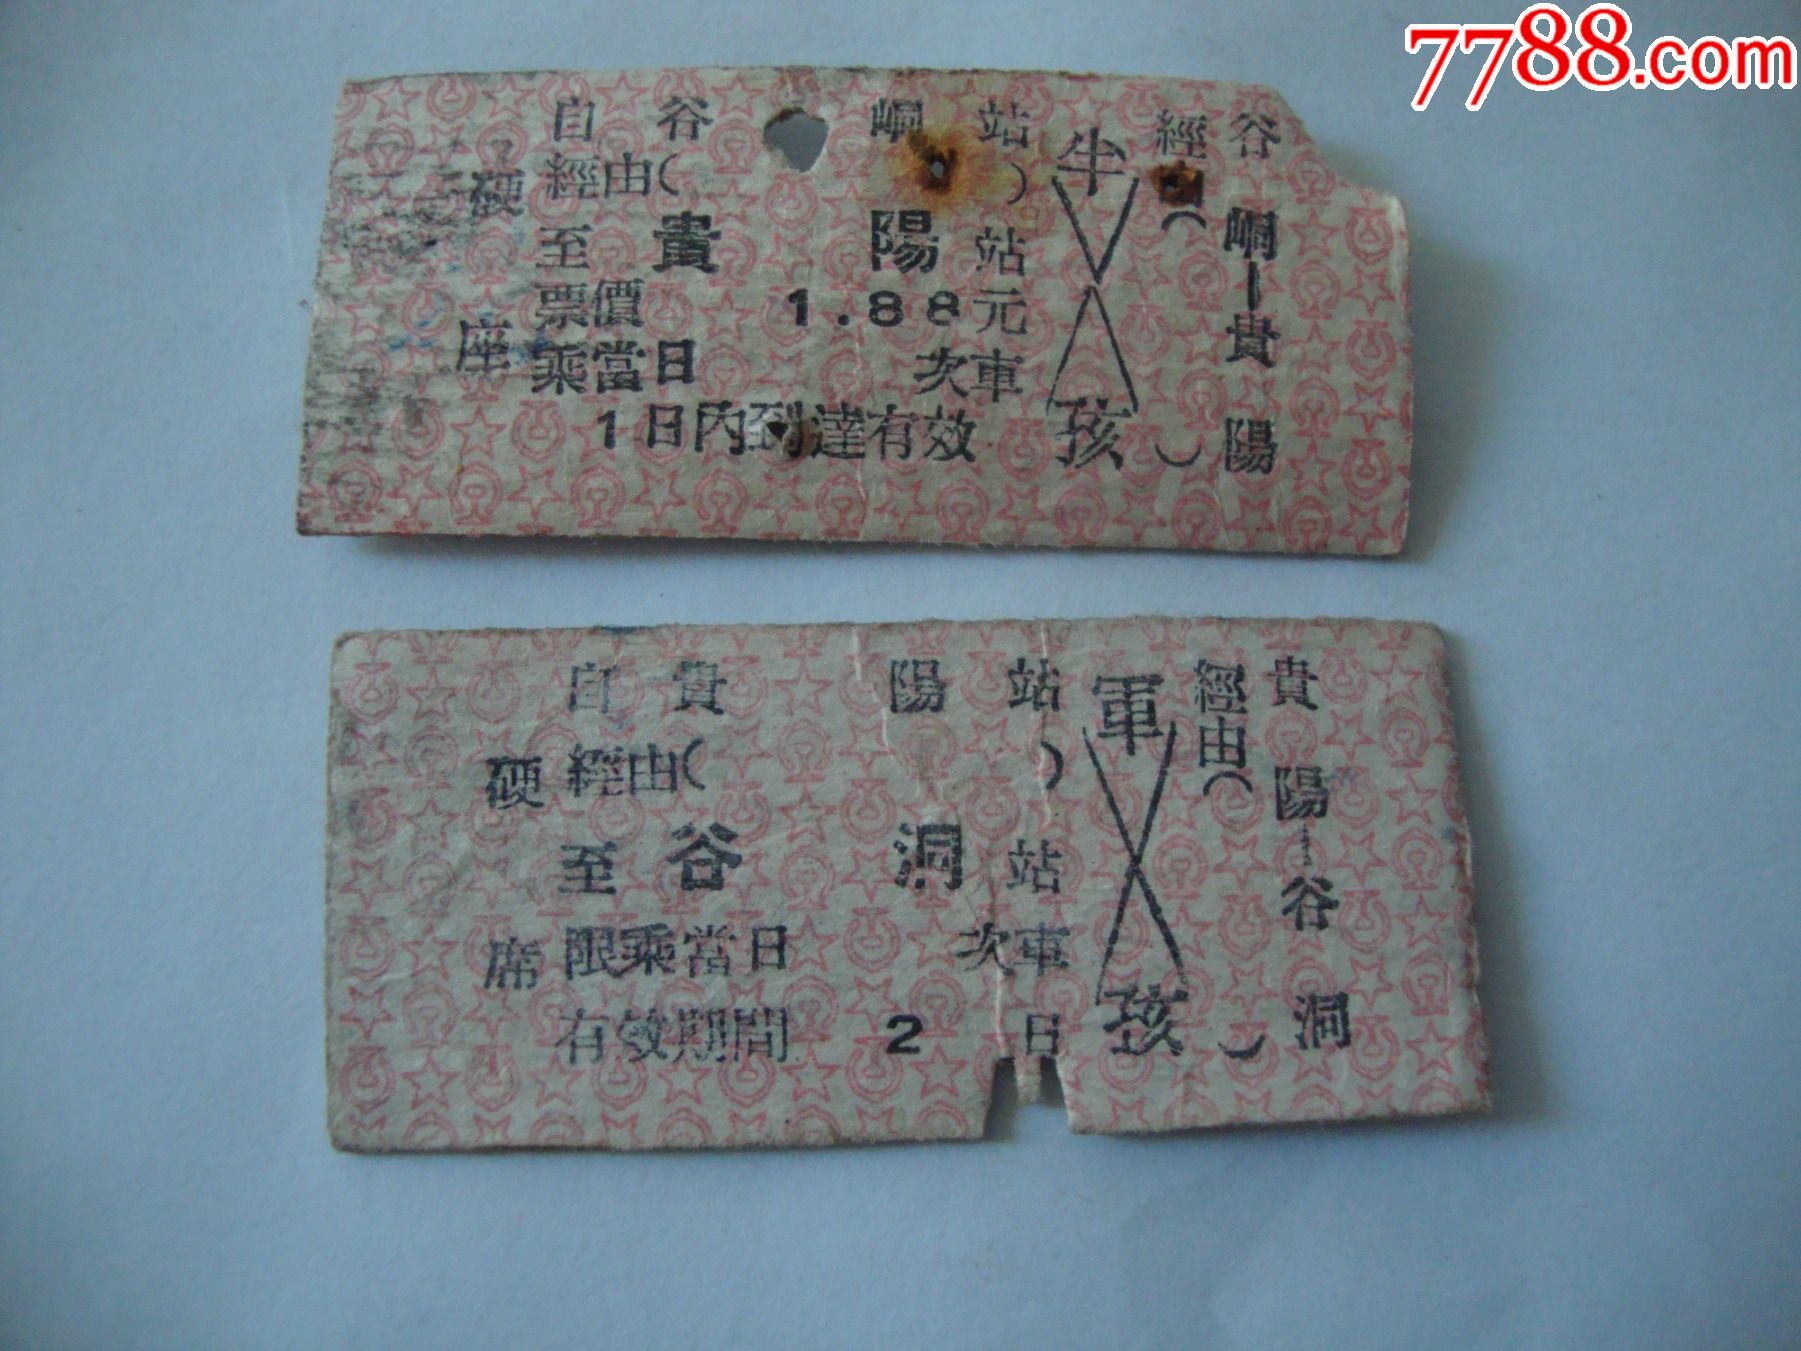 云南火车票有六张-价格:50元-au29151269-火车票 -加价-7788收藏__收藏热线